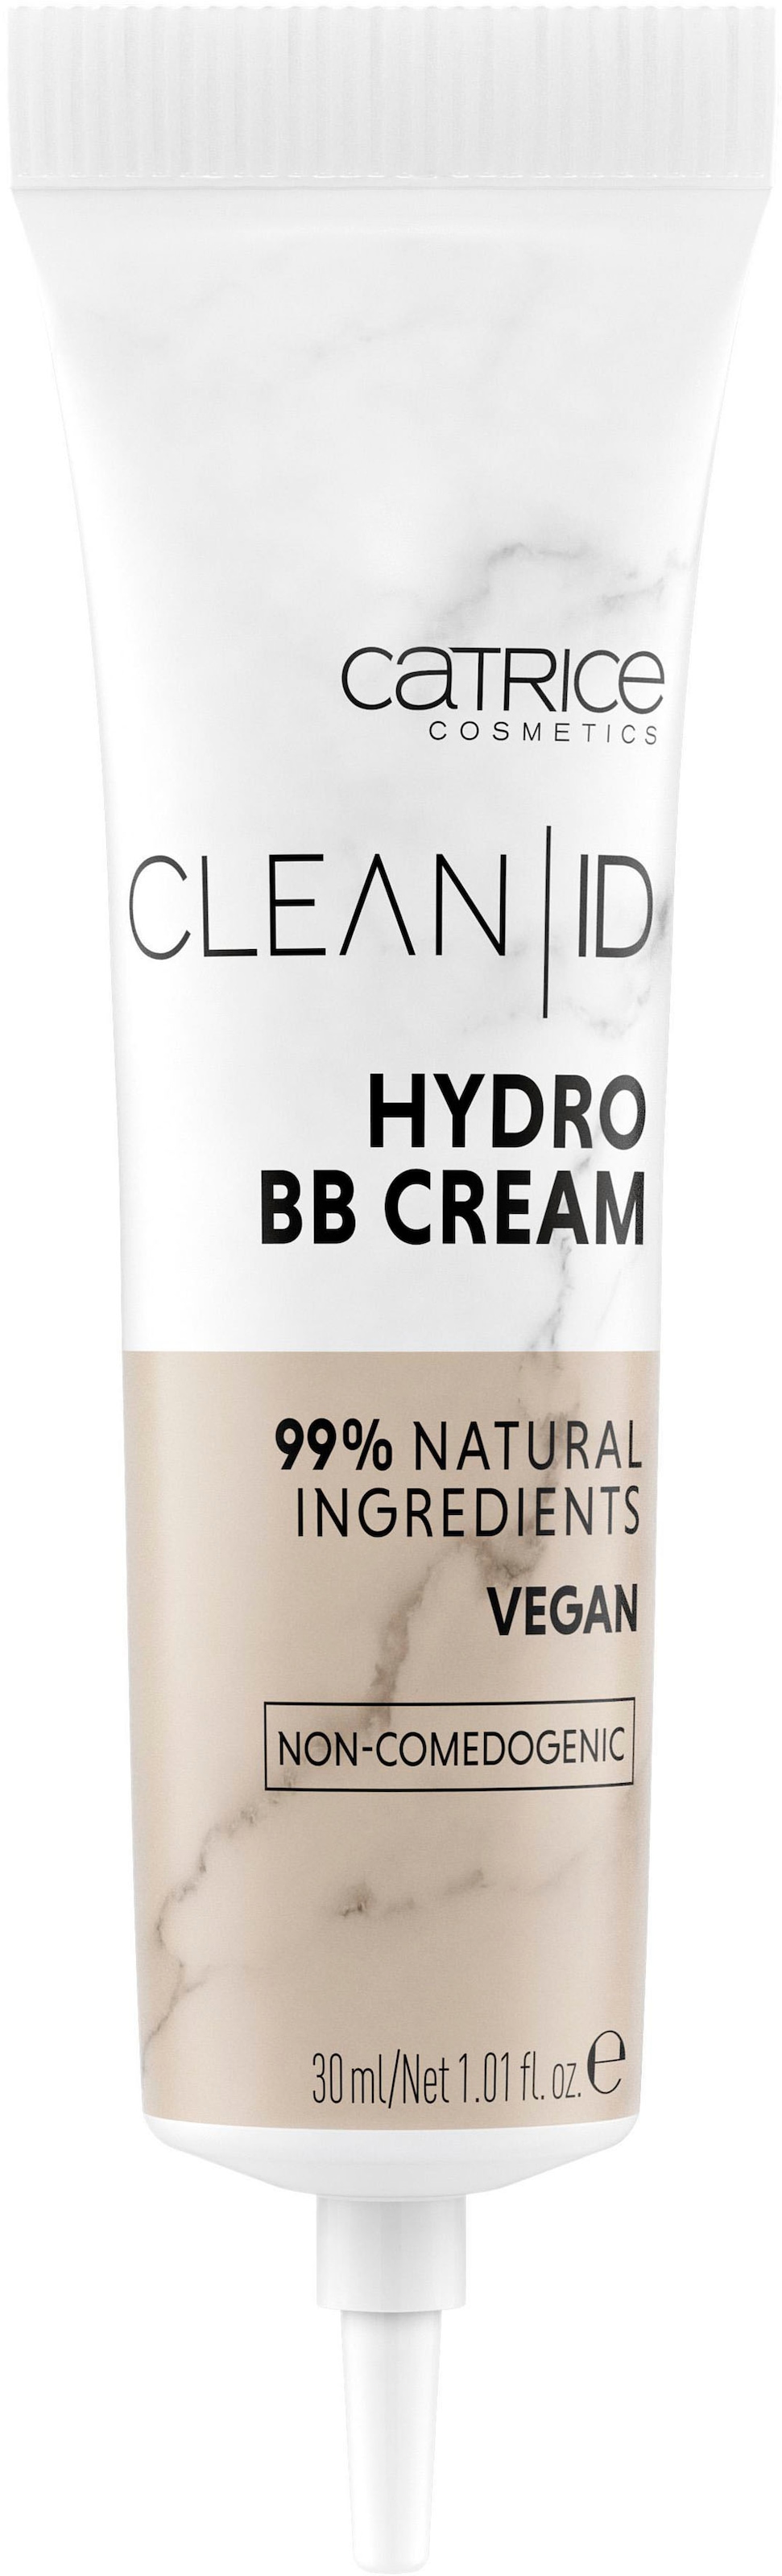 BB online Catrice Hydro ID tlg.) BB-Creme BAUR Cream«, (3 kaufen »Clean |